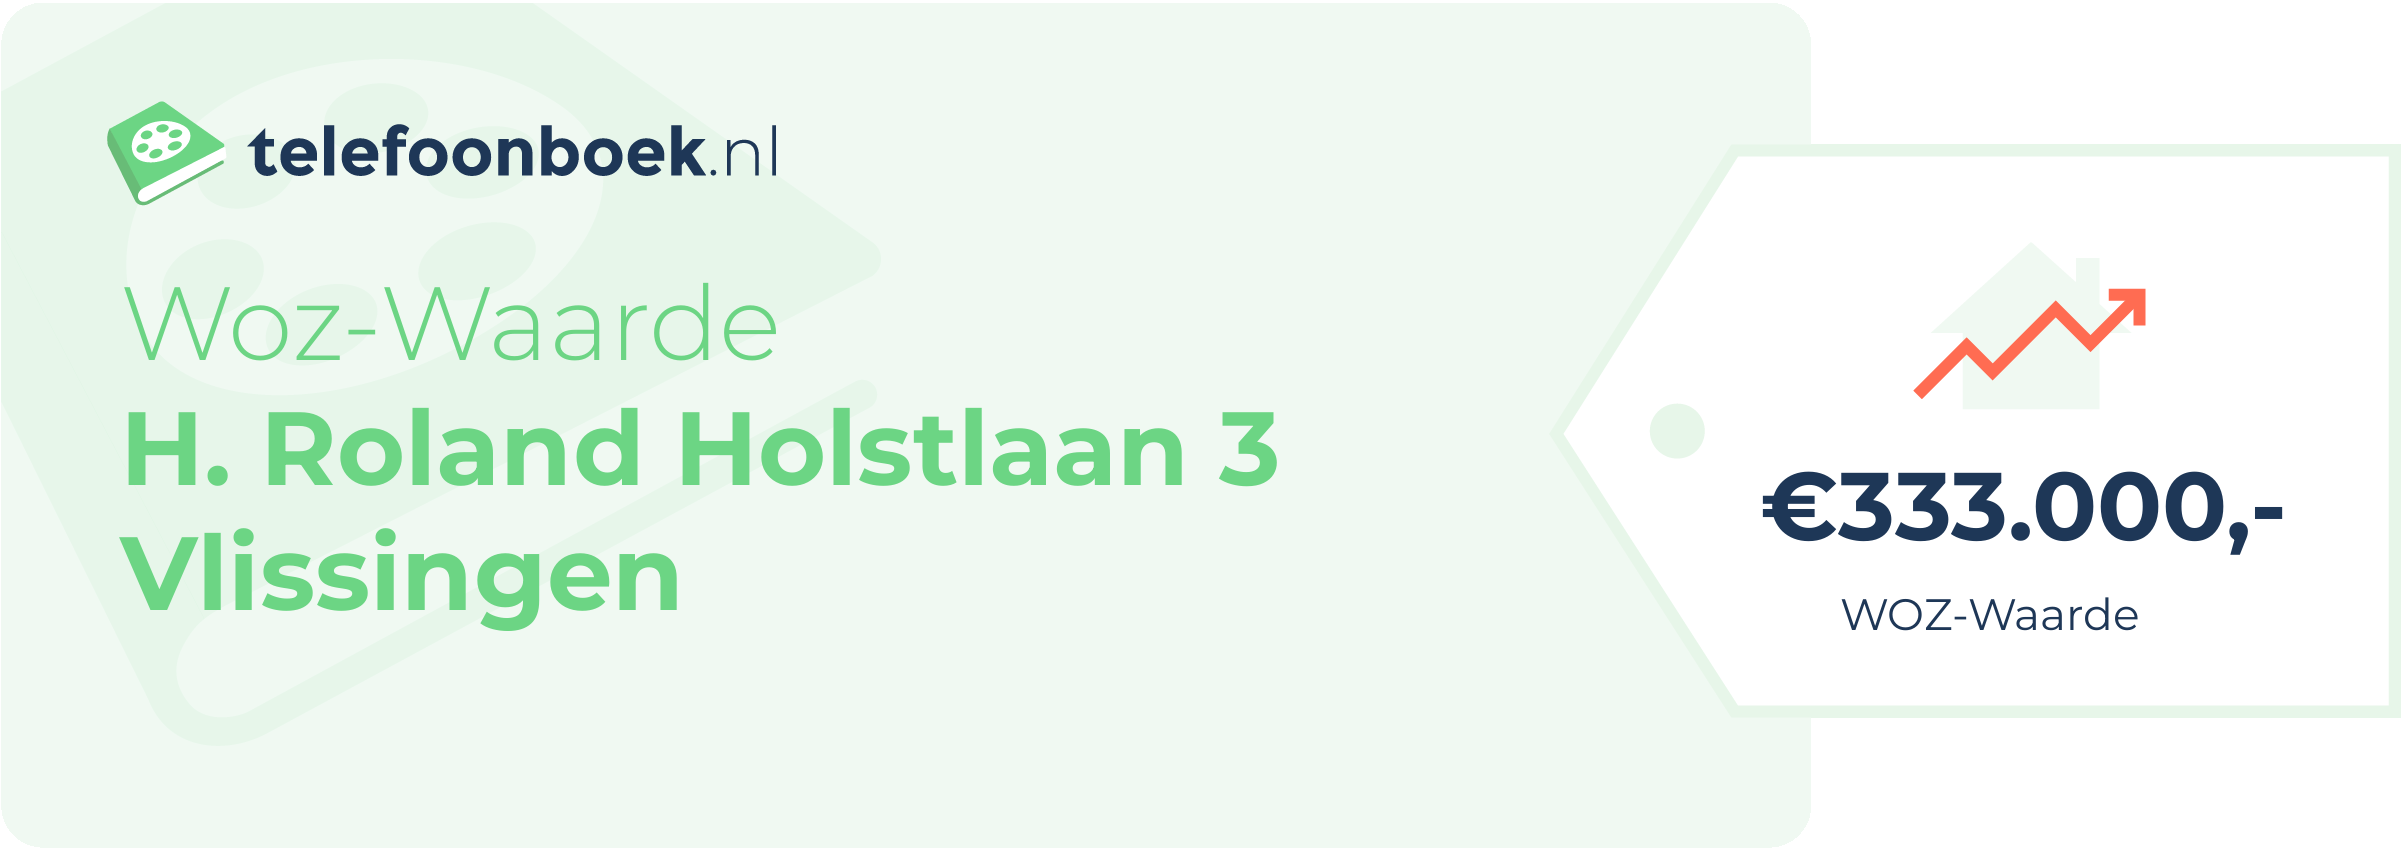 WOZ-waarde H. Roland Holstlaan 3 Vlissingen